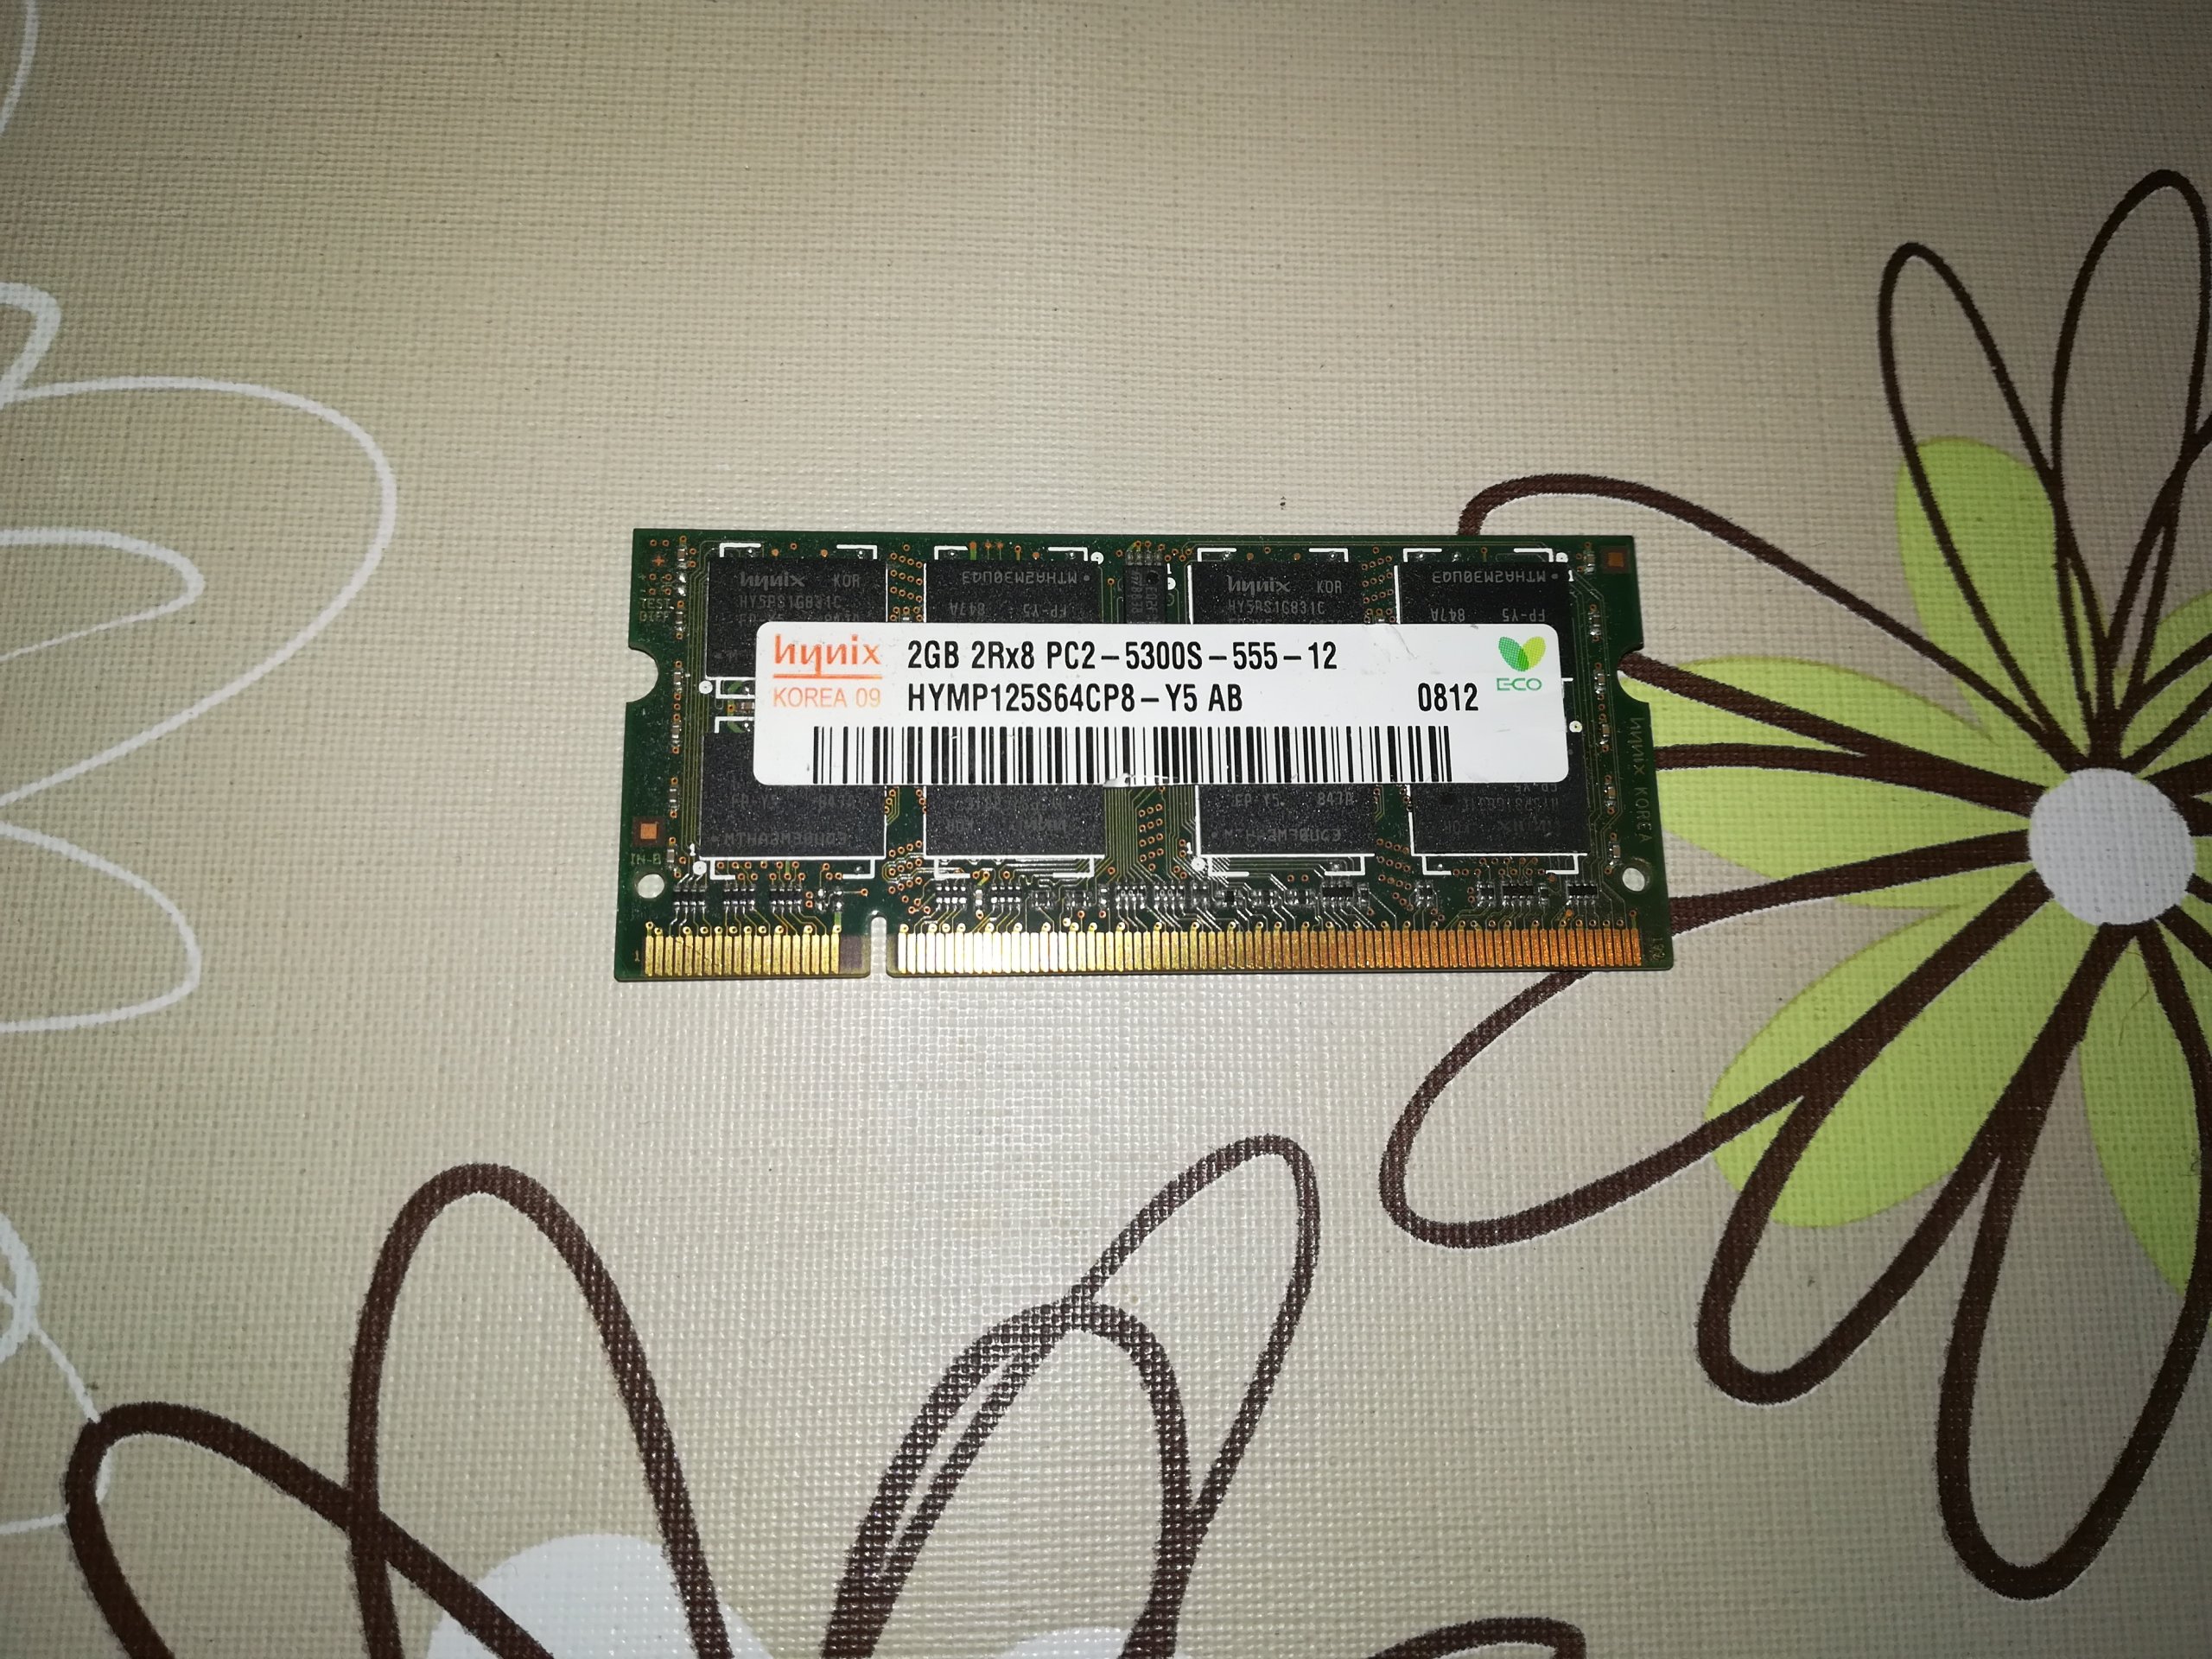 Pamięć 2GB DDR2 do laptopa SODIMM 5300s 667MHz